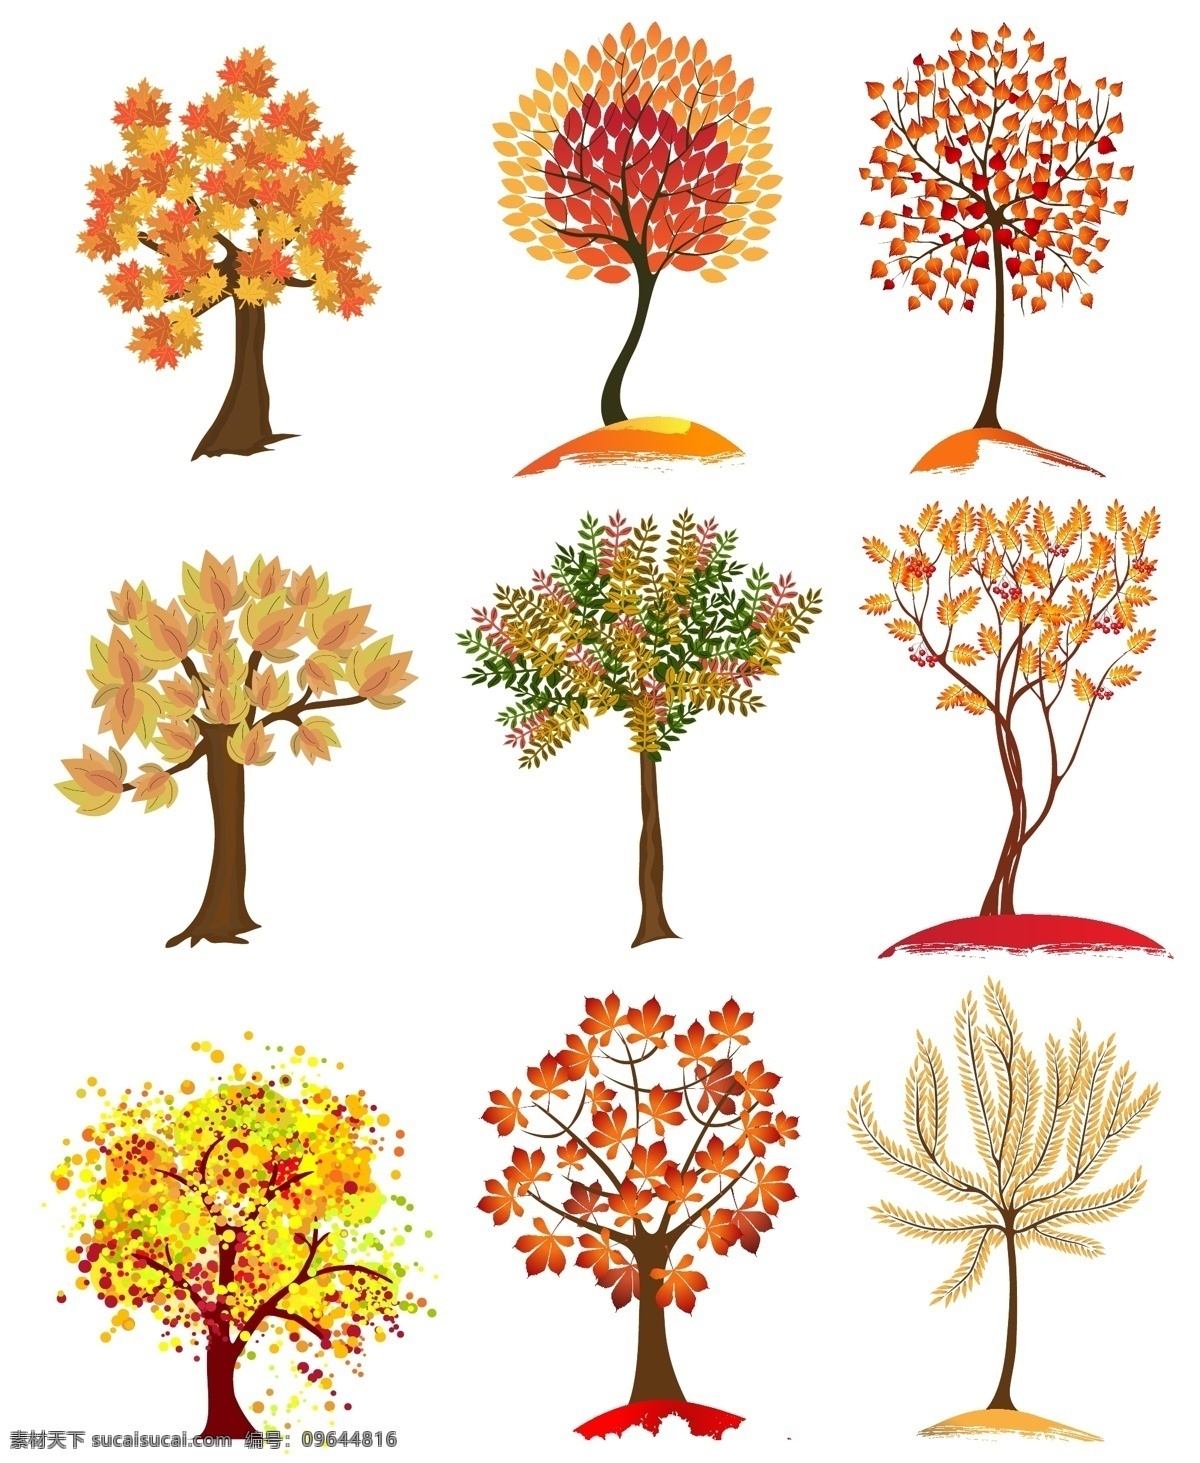 秋天 大树 组图 矢量 元素 矢量元素 树木 植物 装饰元素 彩色大树 秋季大树 大树元素 树木元素 ai元素